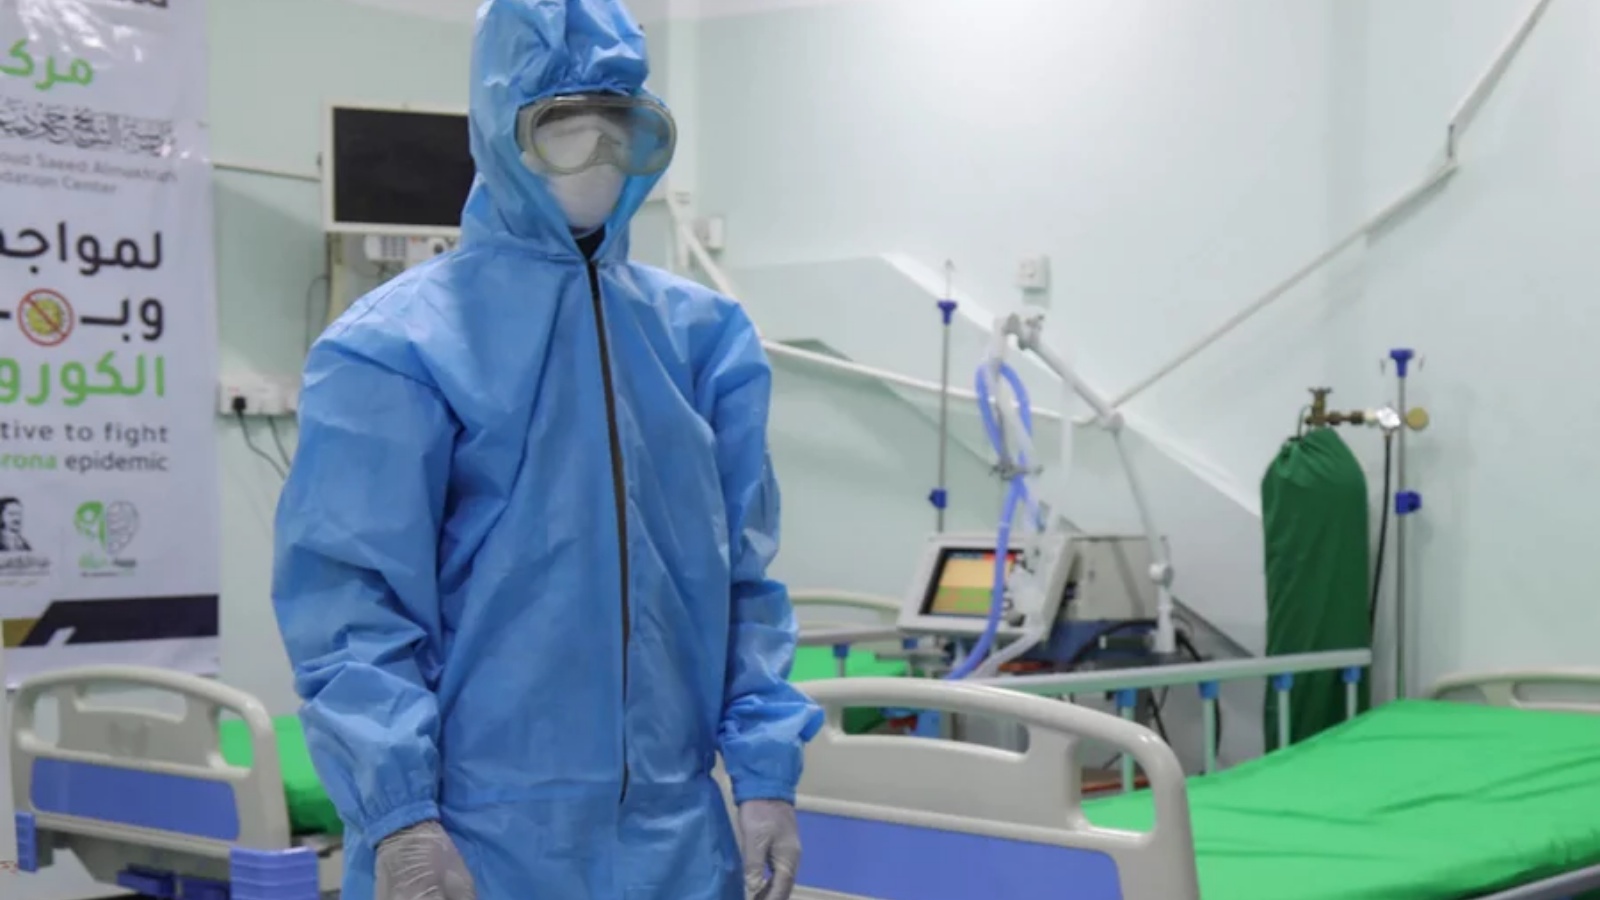 عامل صحي يرتدي معدات الوقاية الشخصية يقف في وحدة العناية المركزة لكوفيد-19 في إحدى المستشفيات.